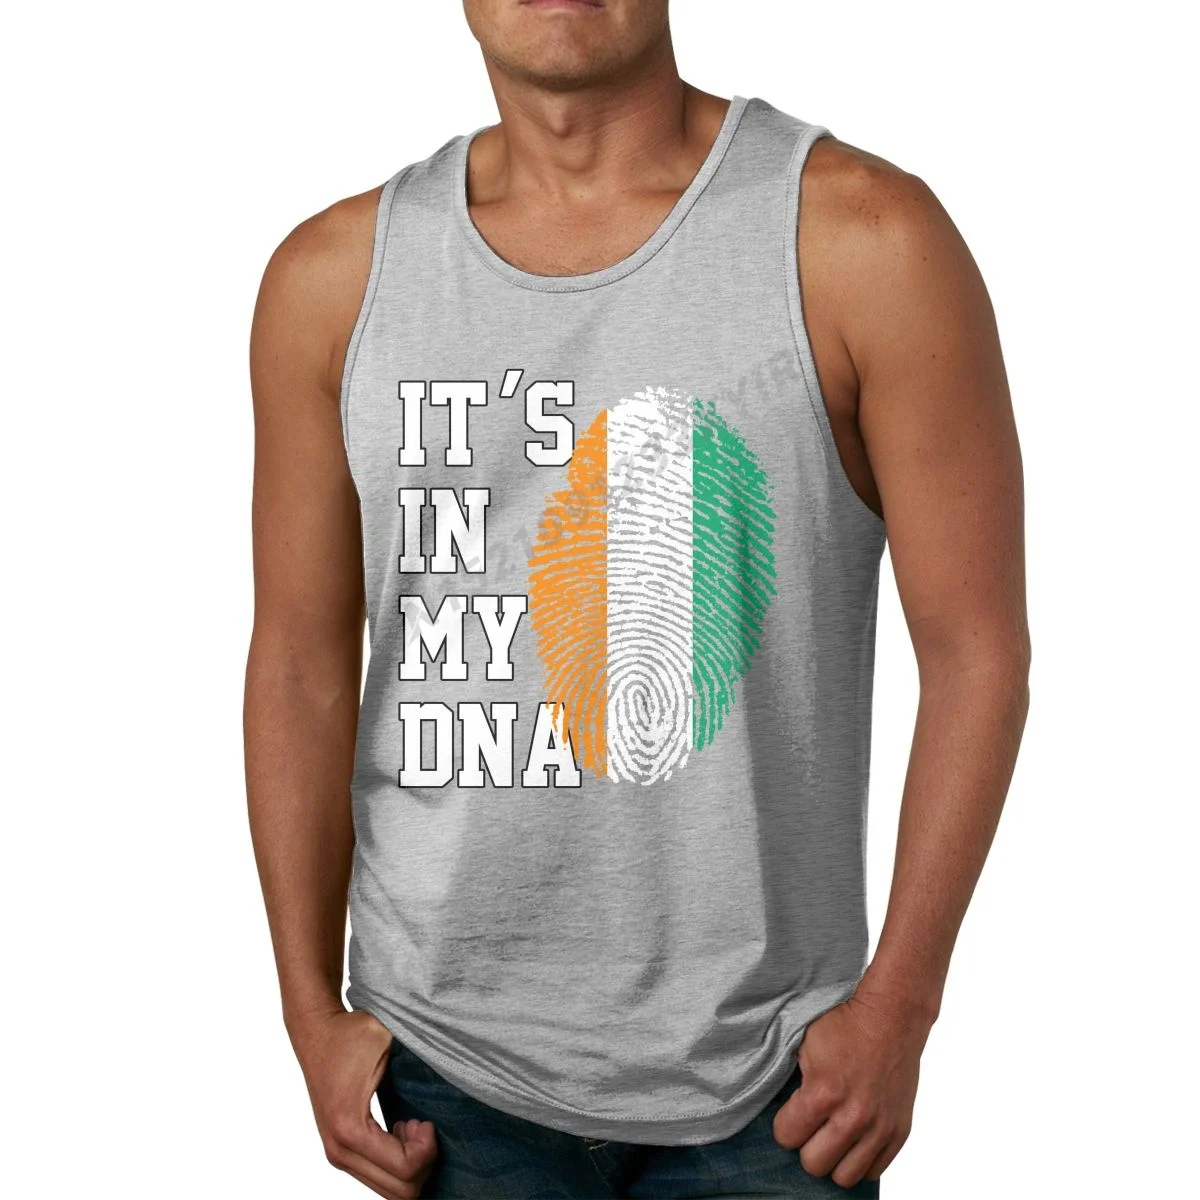 

Летняя мужская майка с надписью It's IN MY DNA, флаг Кот-ДНК, Ivorians, танковый Топ, мужская рубашка в стиле хип-хоп, стандартная Мужская футболка без р...